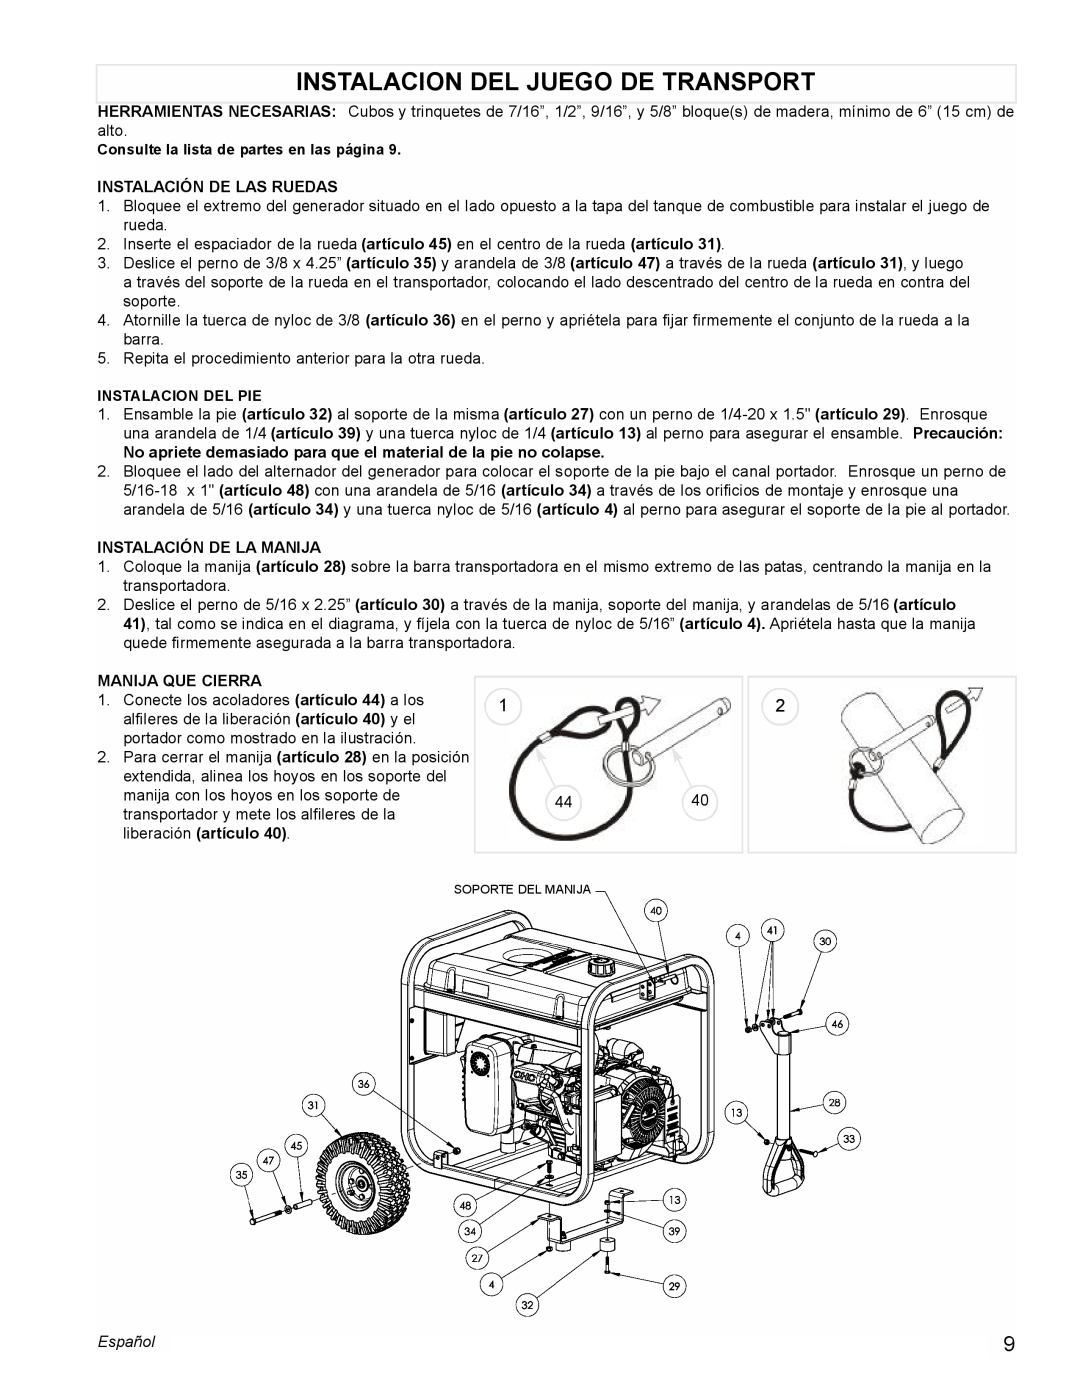 Powermate PM0435004 manual Instalacion Del Juego De Transport, Instalación De Las Ruedas, Instalación De La Manija, Español 